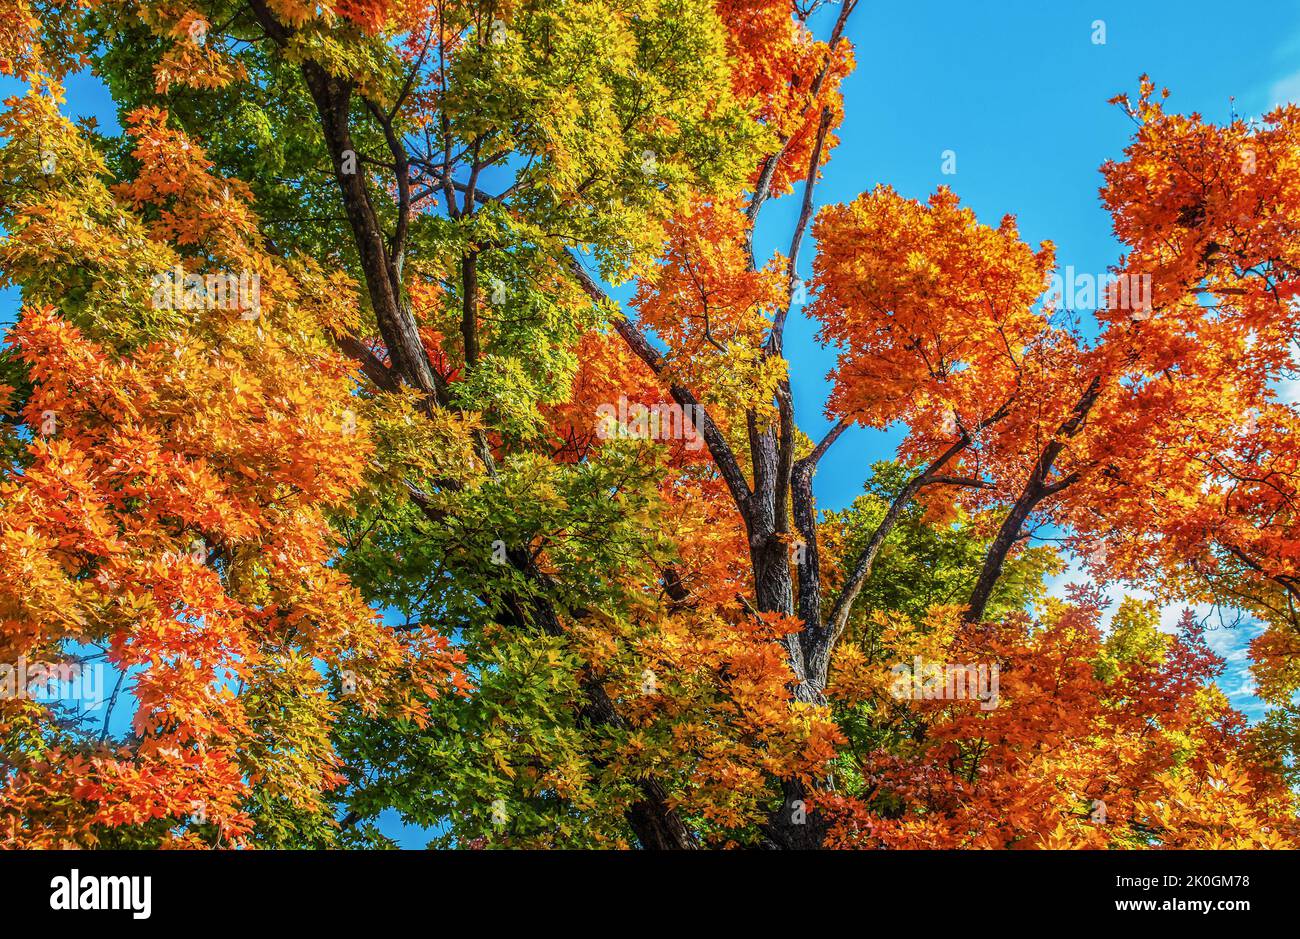 Mirando los árboles otoñales que llenan el marco con vibrantes hojas multicolor sobre un cielo azul brillante Foto de stock